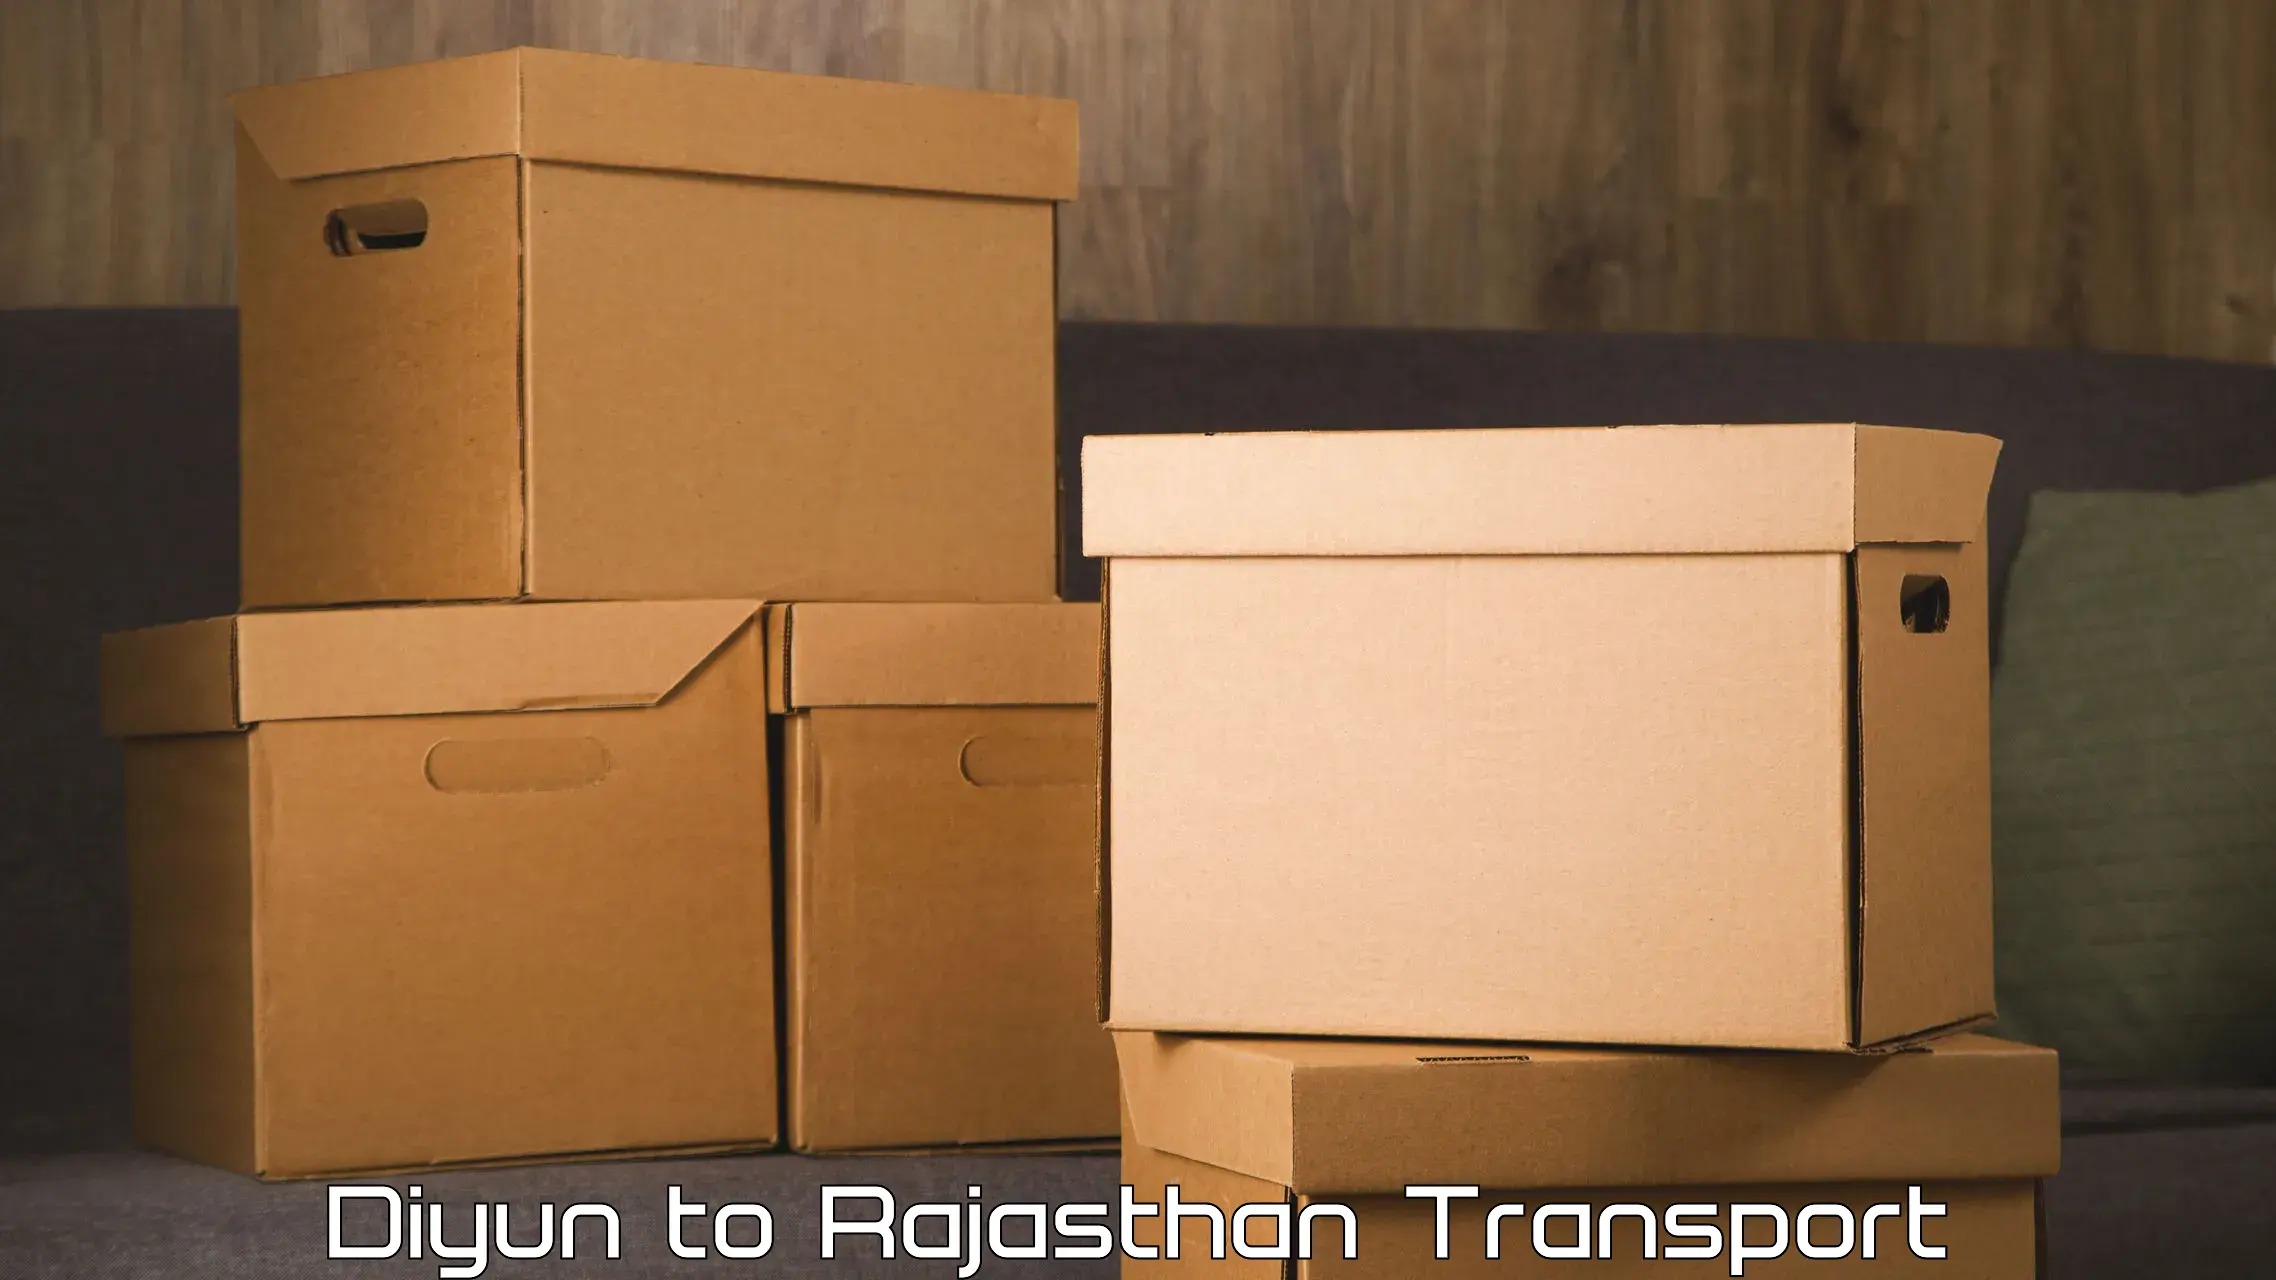 Luggage transport services Diyun to Raipur Pali